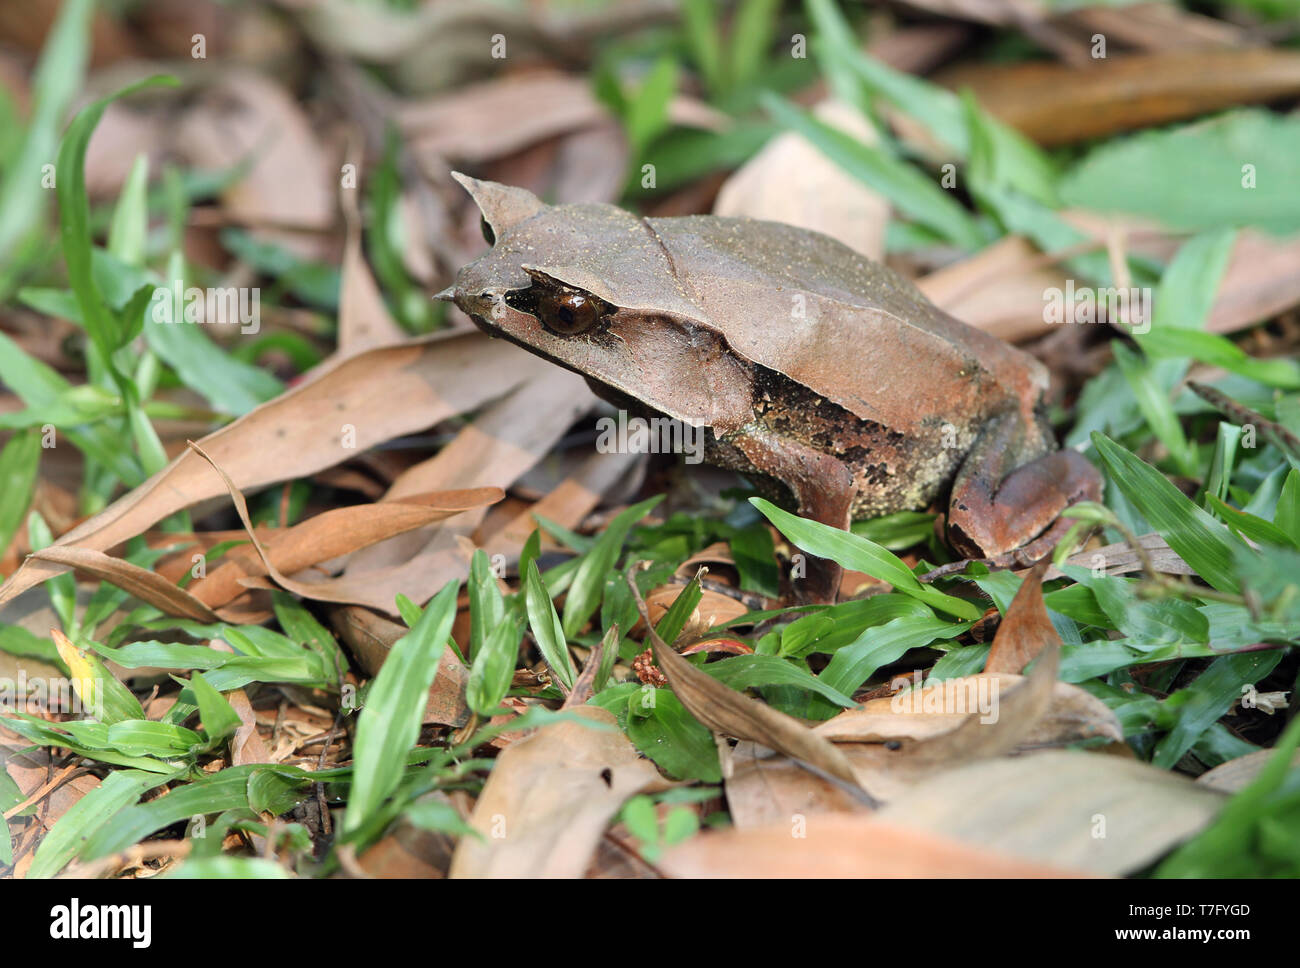 A becco lungo rana cornuta (Megophrys nasuta), anche conoscere e malese Rana cornuta (o: la malese rana foglia) è una specie di rane limitato al rainfores Foto Stock